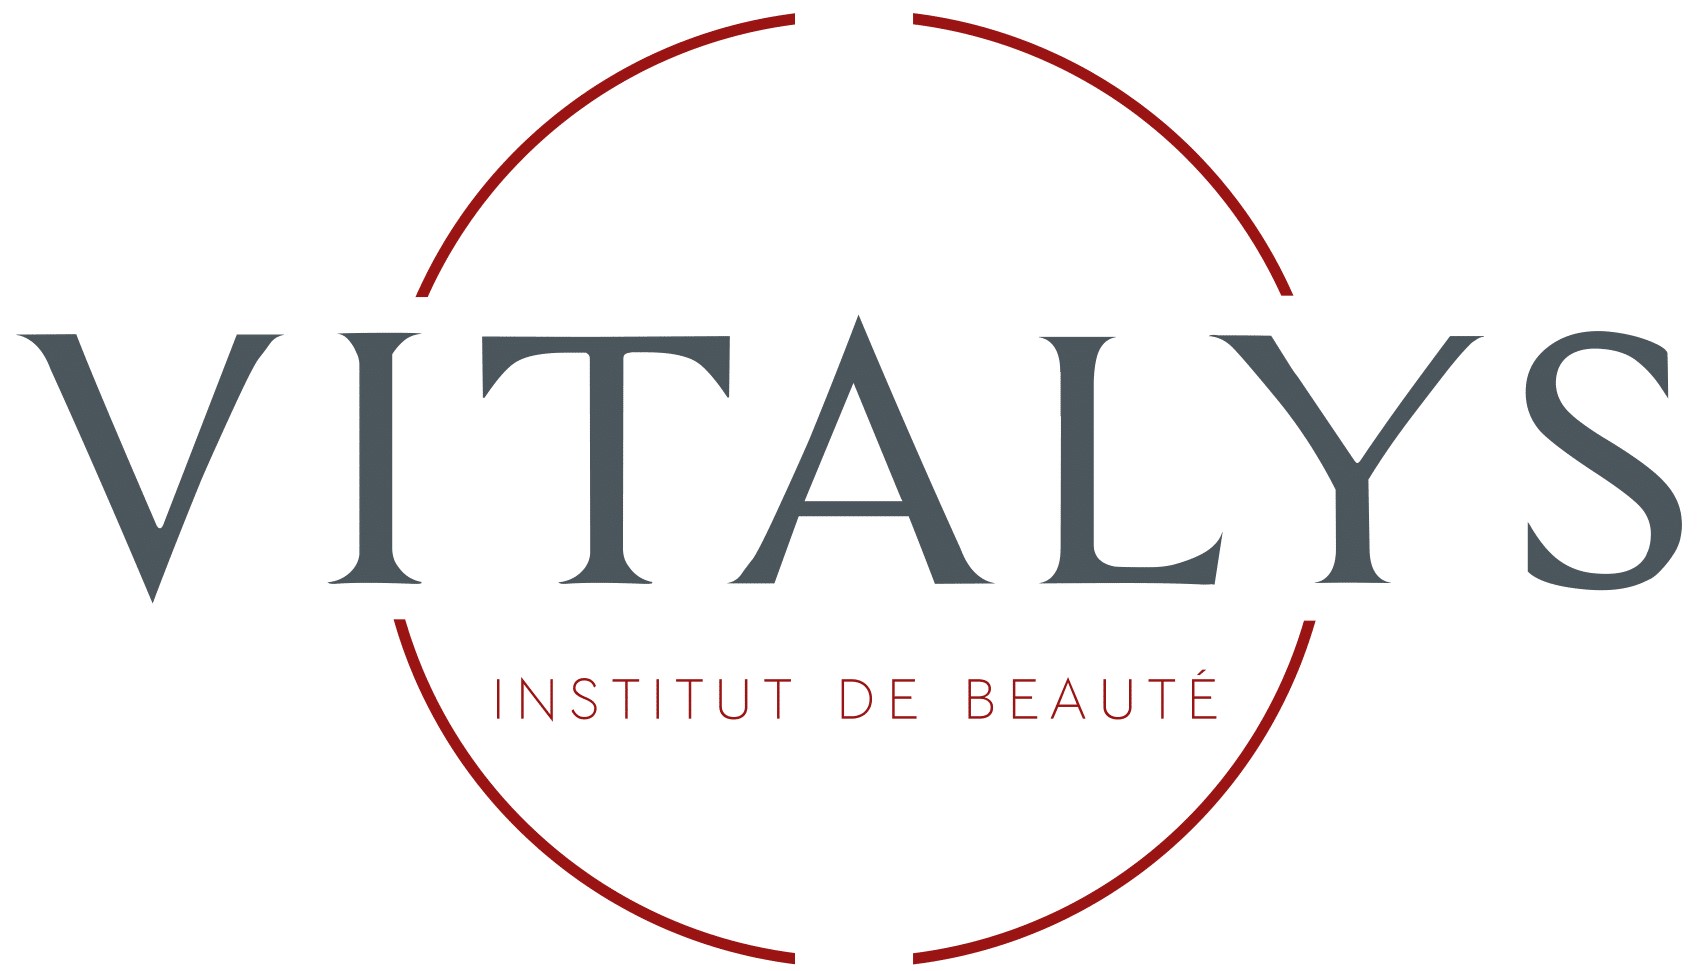 Vitlays Institute De Beaute